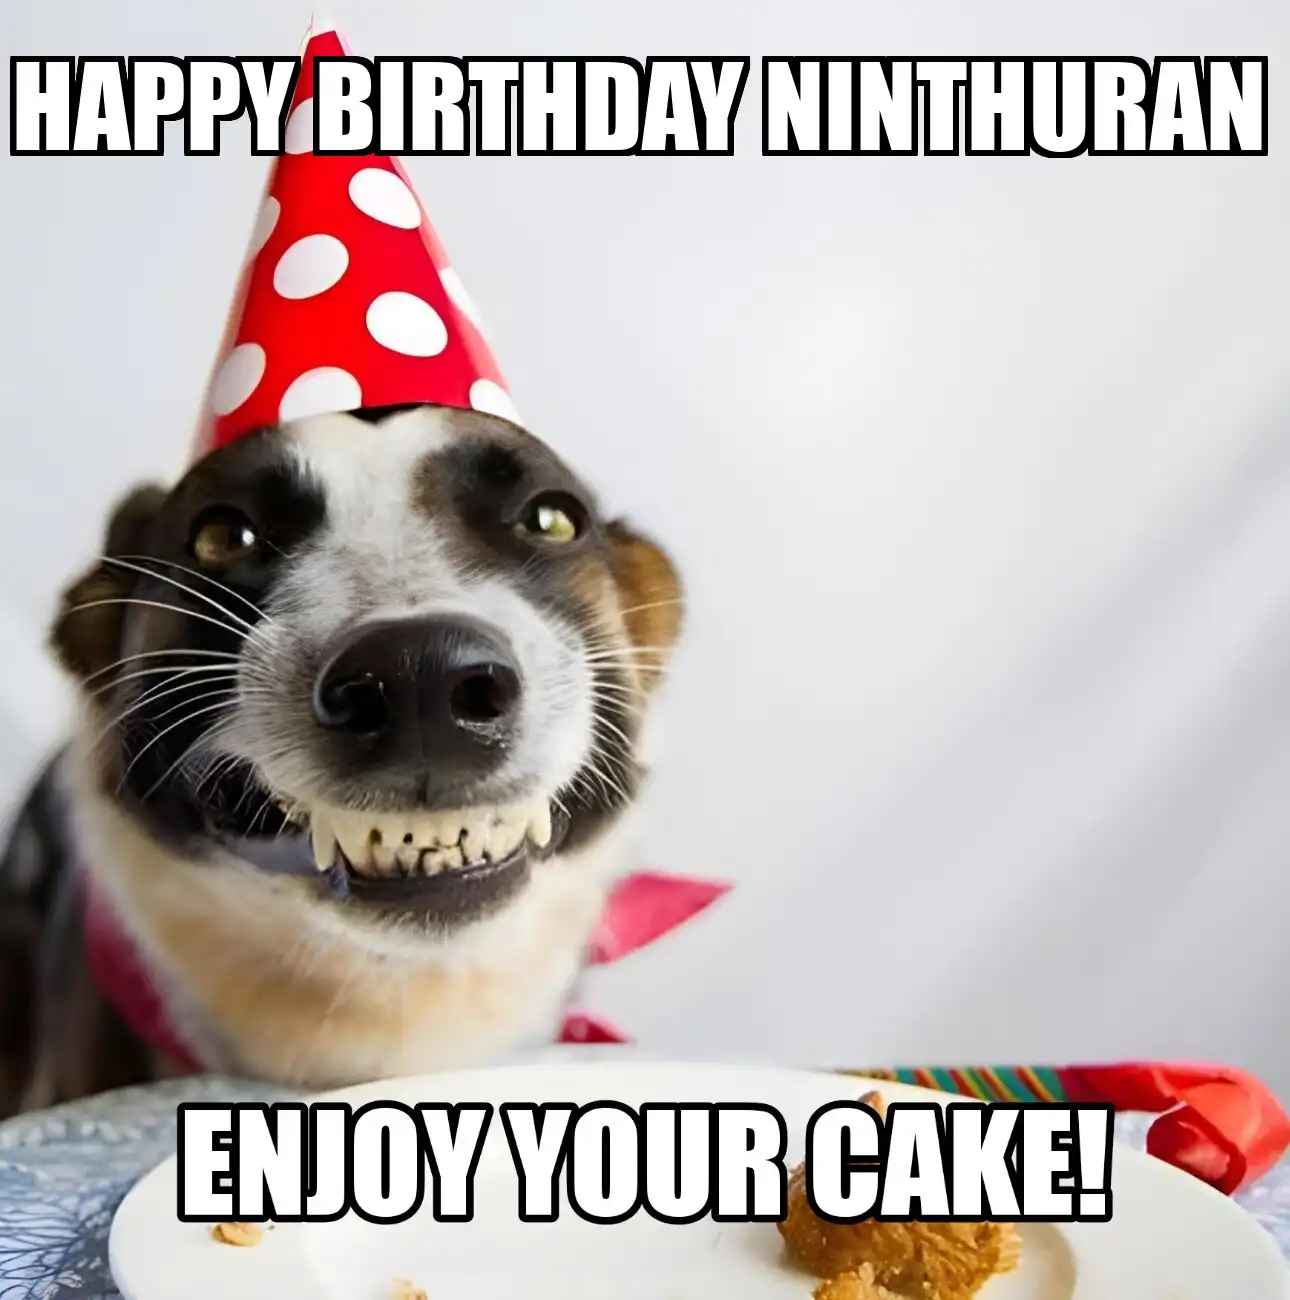 Happy Birthday Ninthuran Enjoy Your Cake Dog Meme